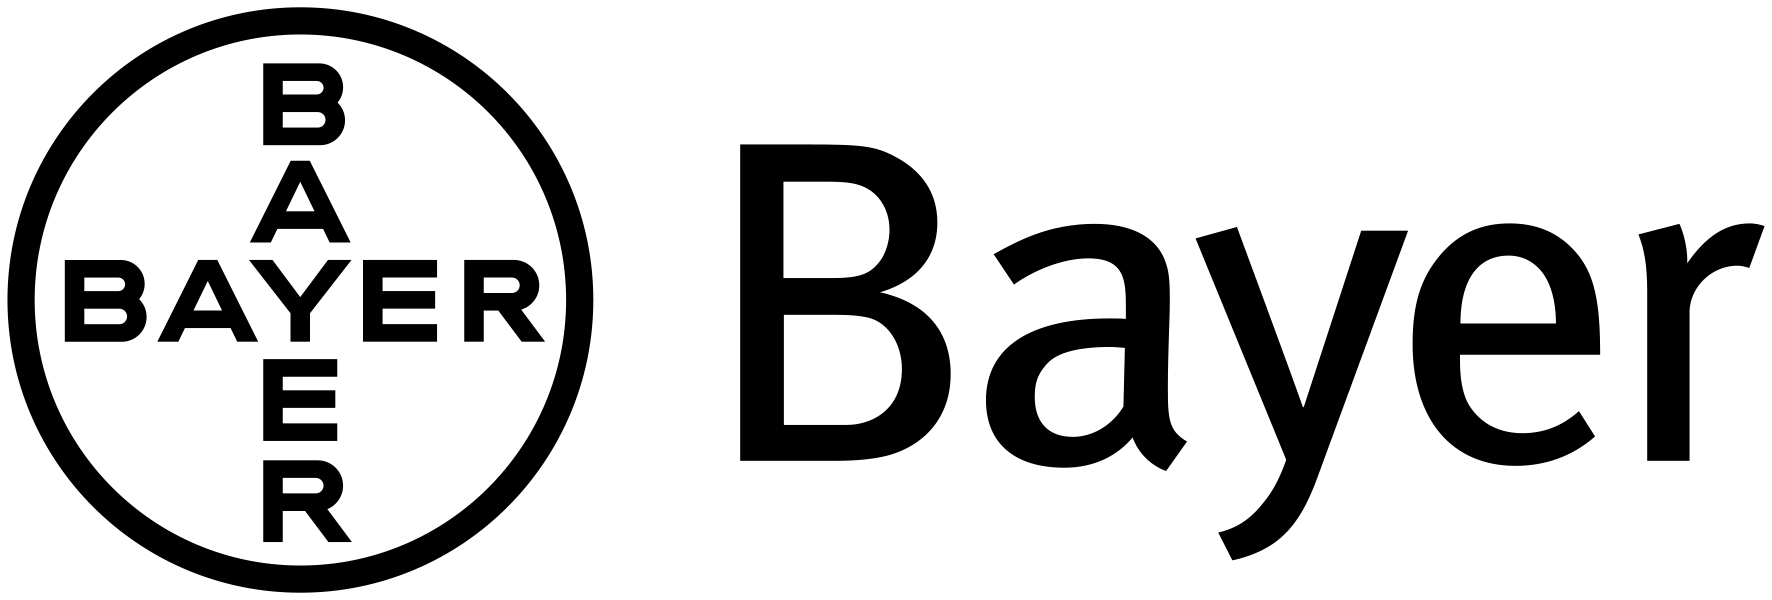 Bayer Logo Rhetorich Reference